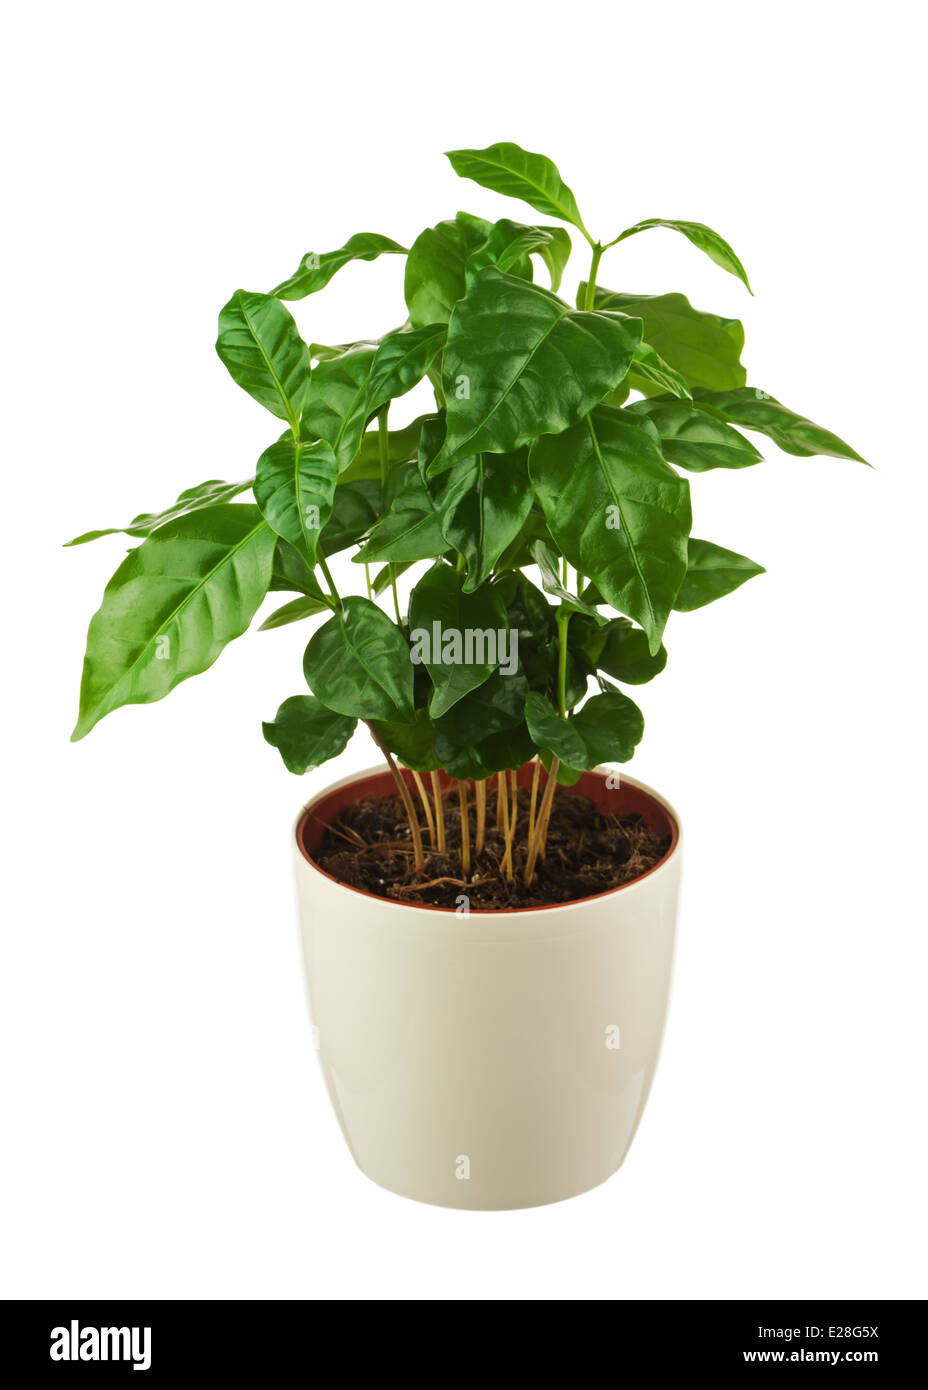 Kaffeebaum (Arabica-Pflanze) im Blumentopf isoliert auf weißem Hintergrund.  Closeup Stockfotografie - Alamy